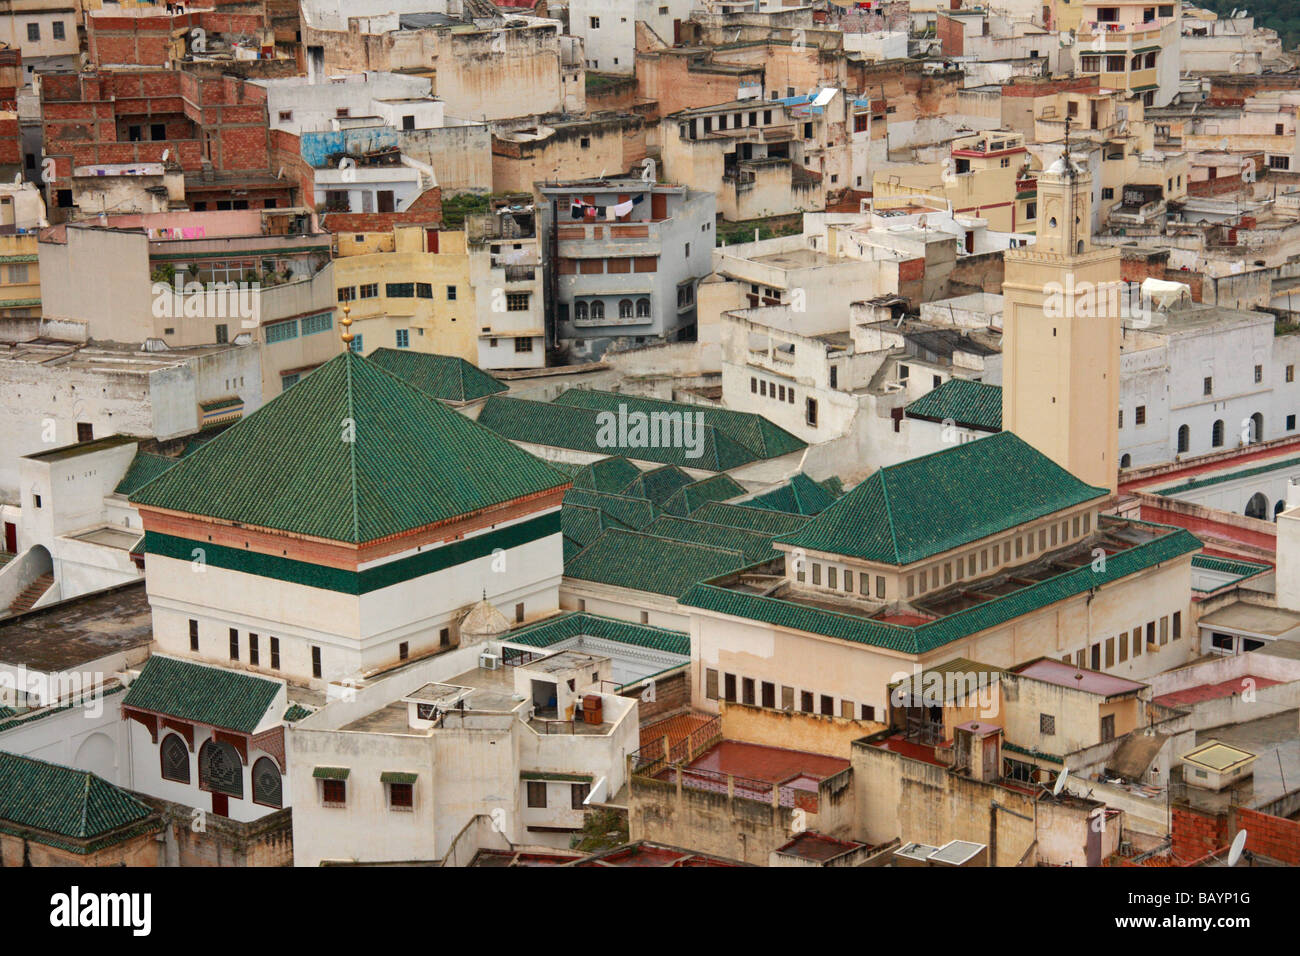 Vue de dessus le toit vert de Moulay Idriss zawiya & entourant les bâtiments de la ville sainte, près de Meknès, Maroc, Afrique du Nord Banque D'Images